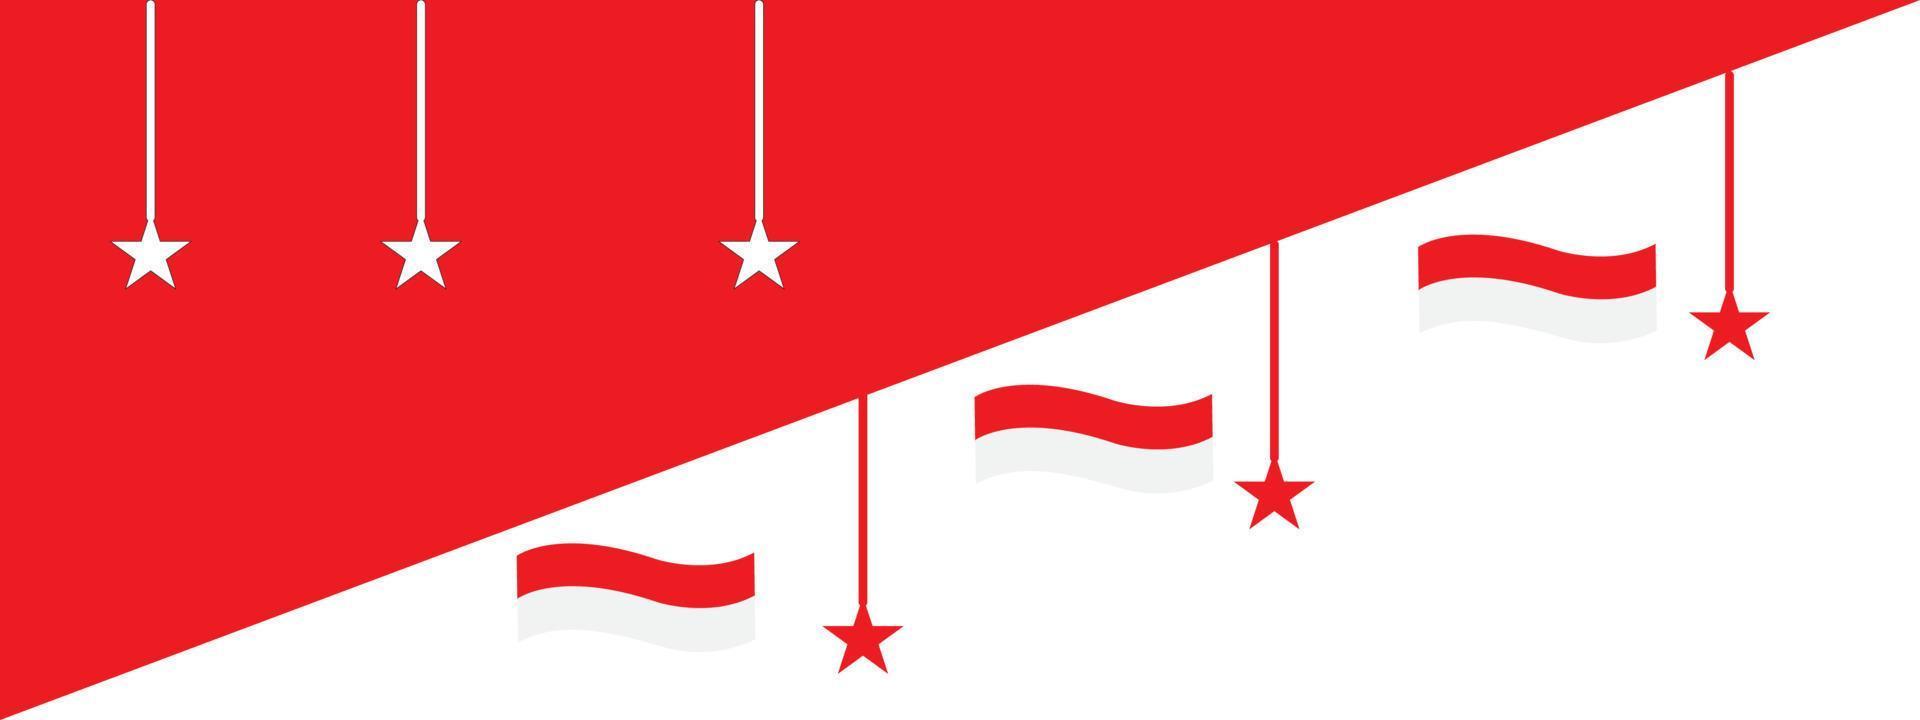 Fondo de bandera indonesia gratis con estrellas. vector